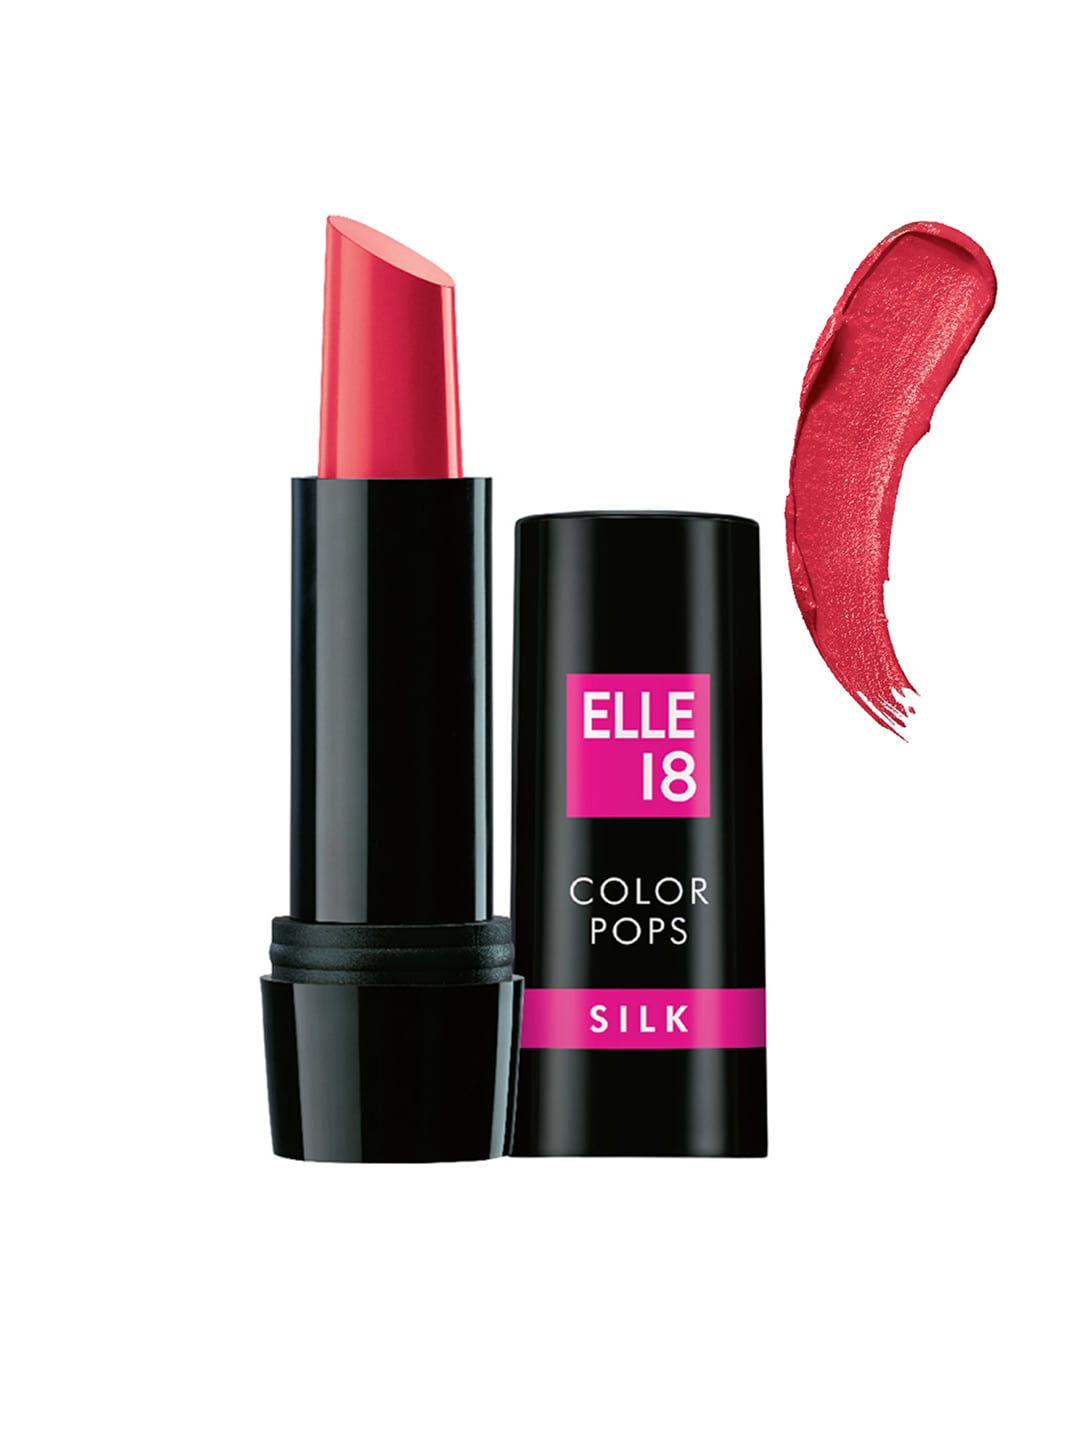 ELLE 18 P24 Color Pops Silk Lipstick 4.2 g Price in India